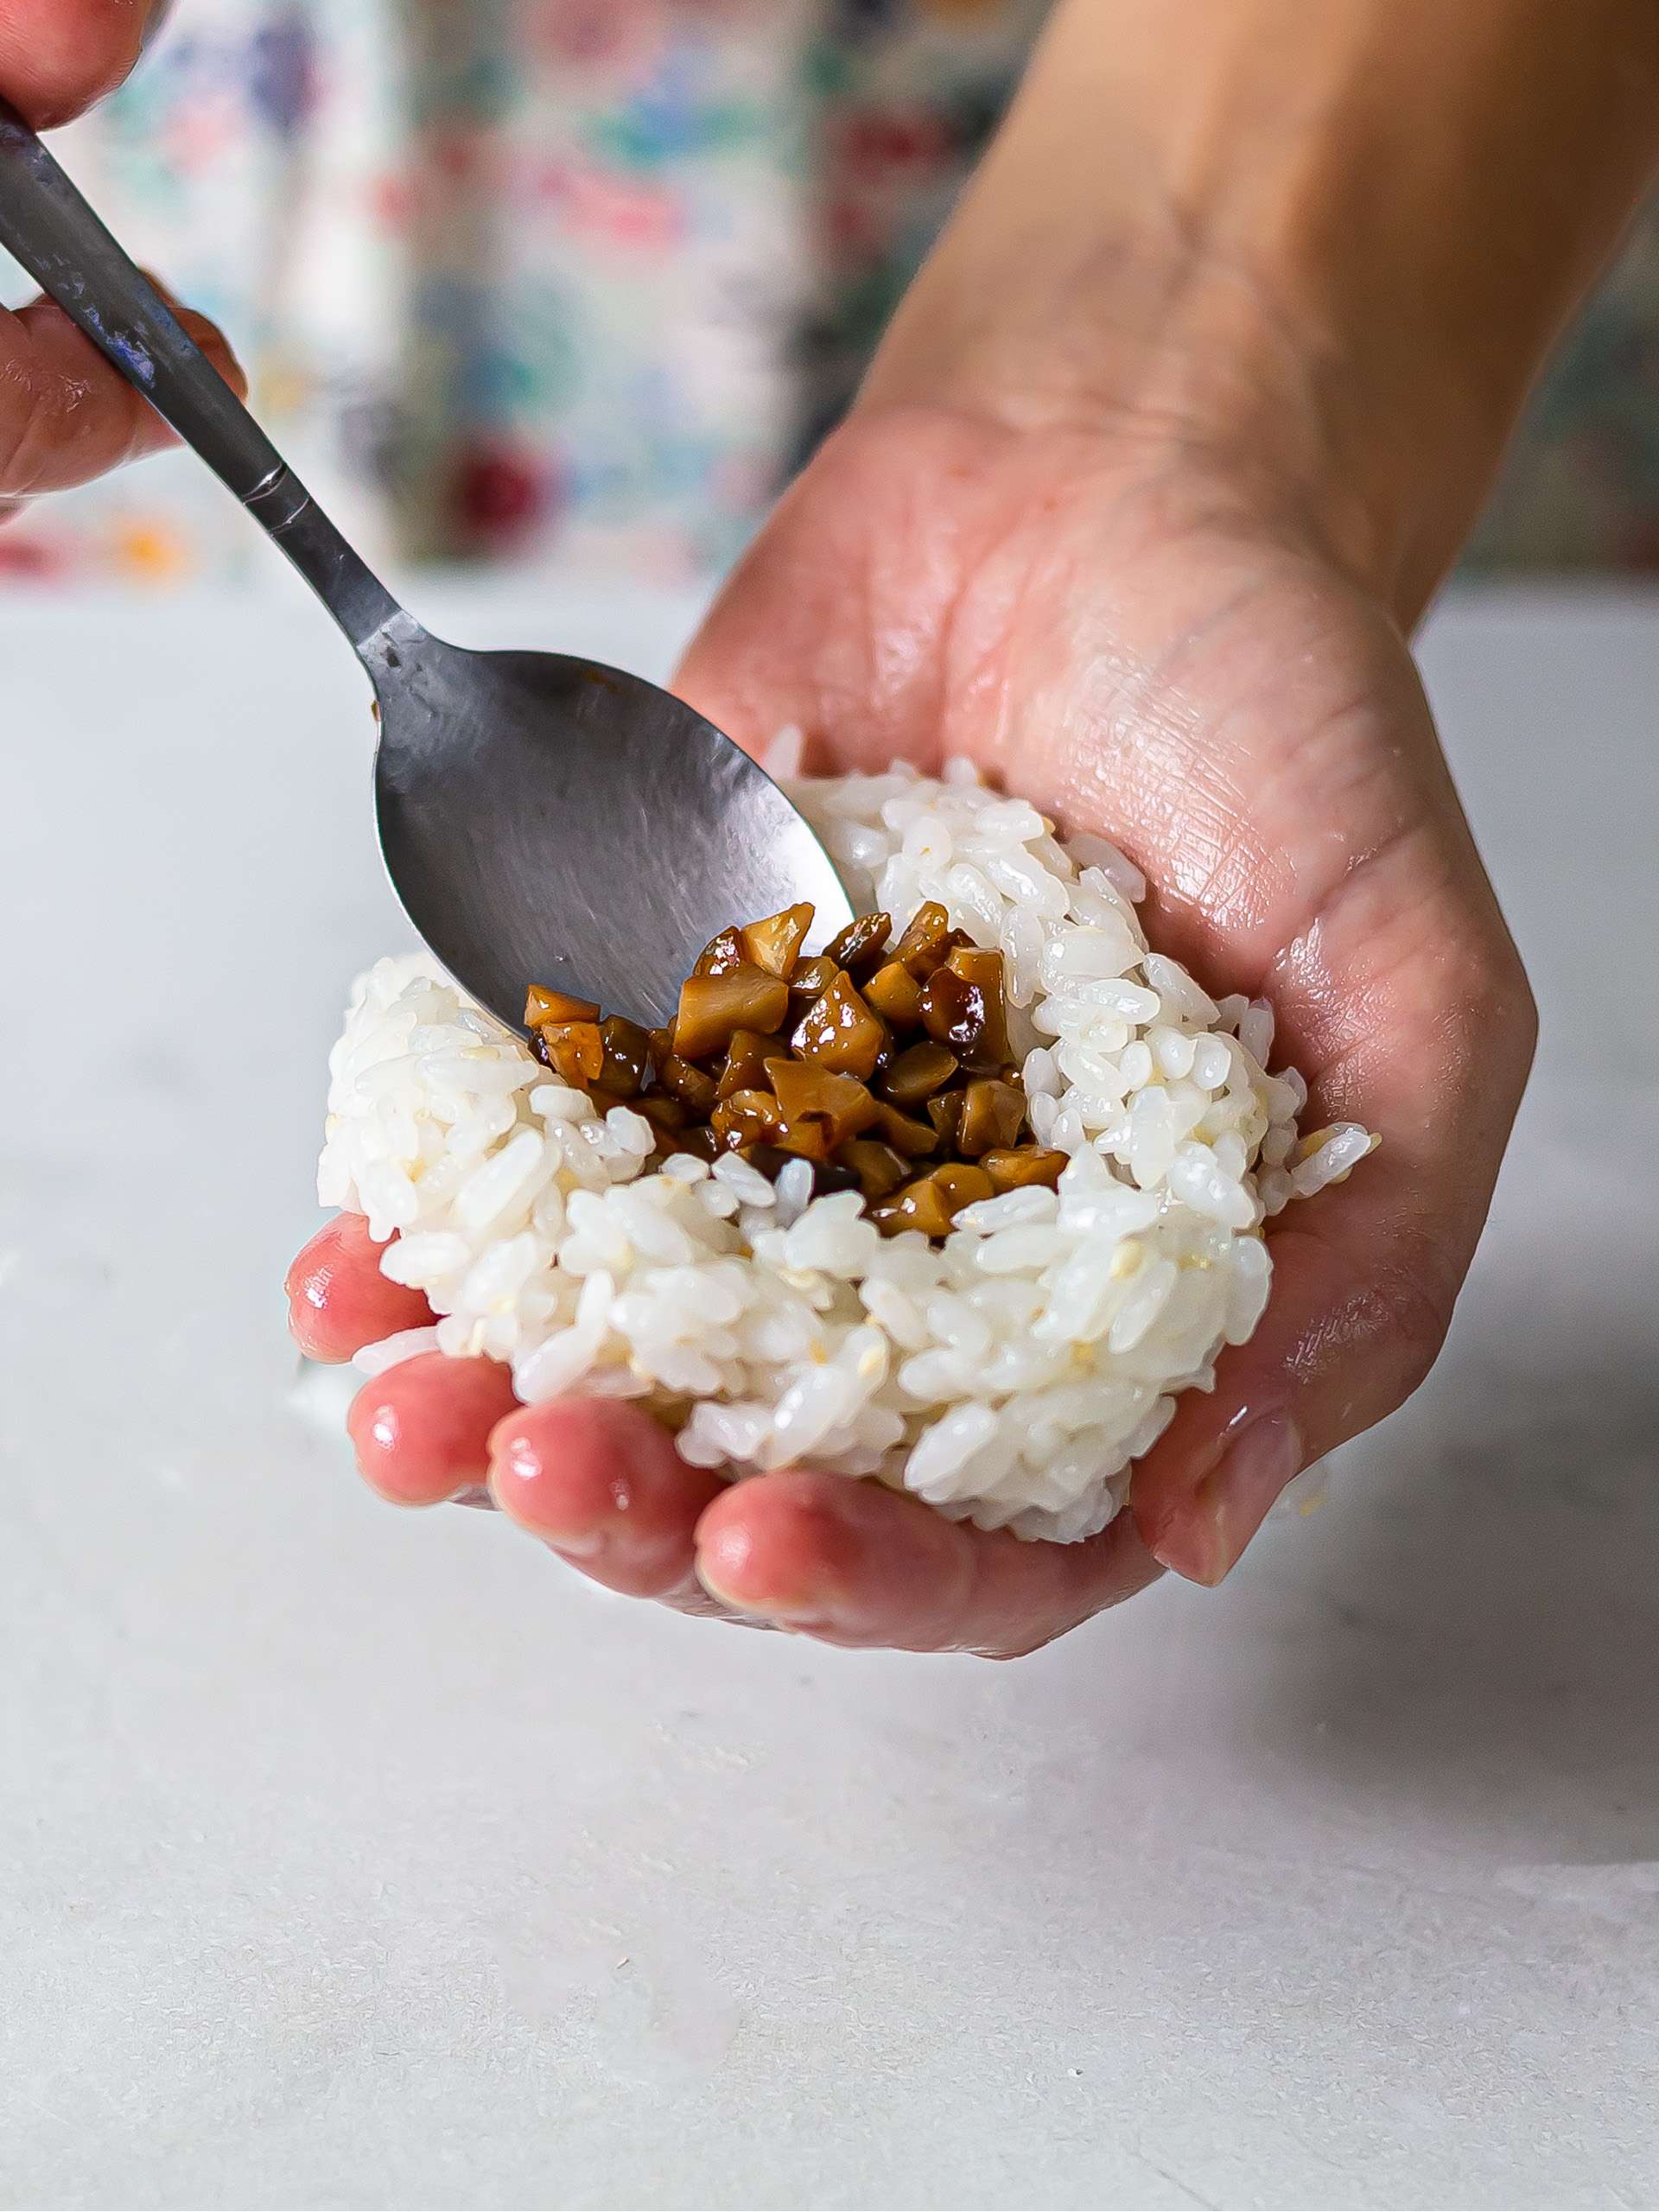 yaki onigiri rice balls with mushroom filling